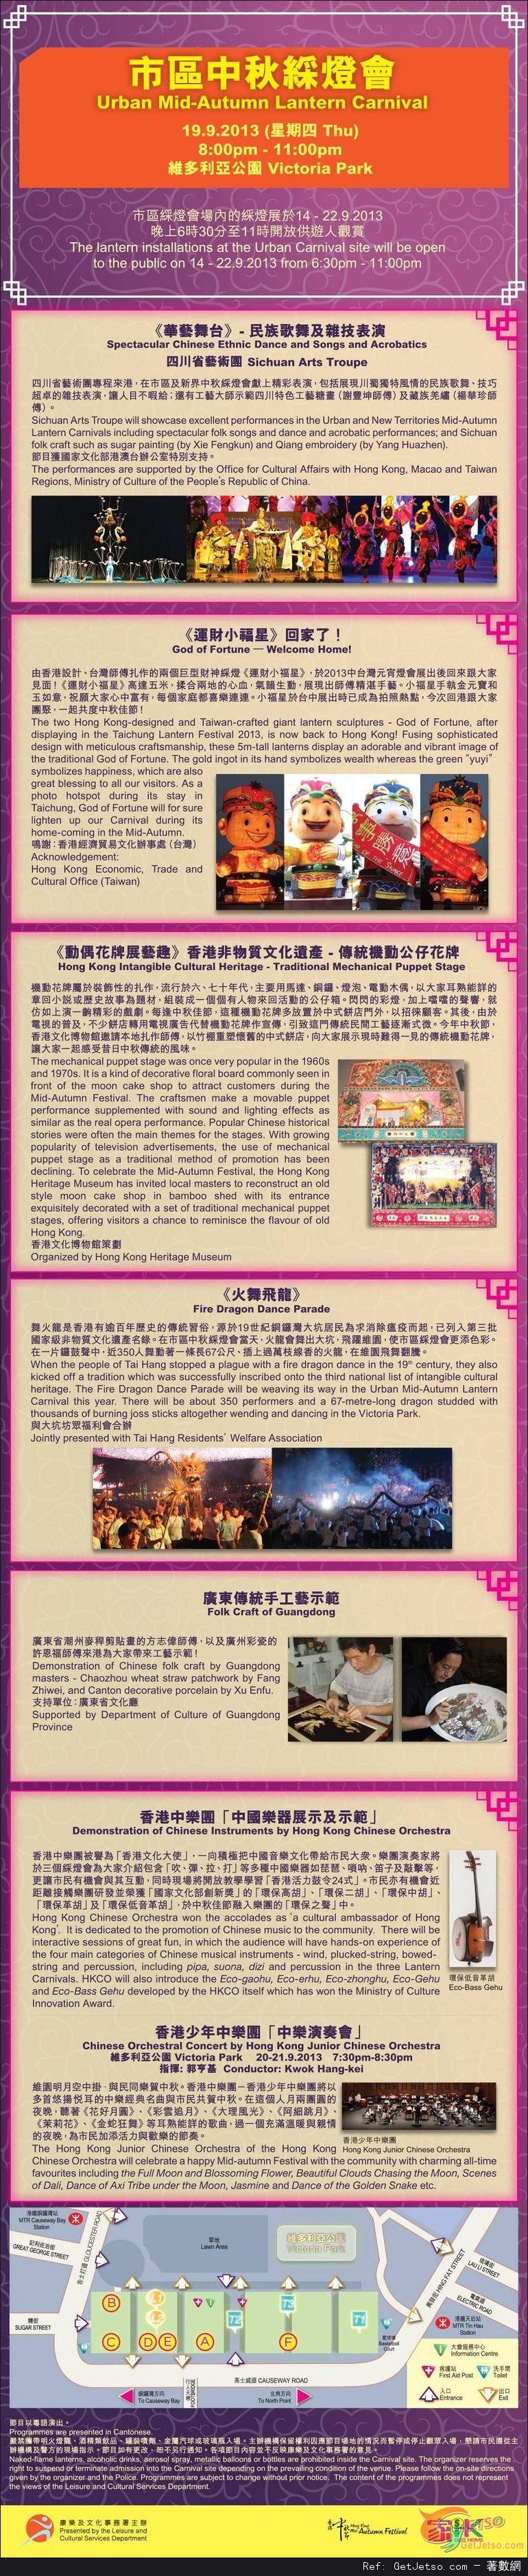 2013癸巳年中秋綵燈會(13年9月19-21日)圖片2